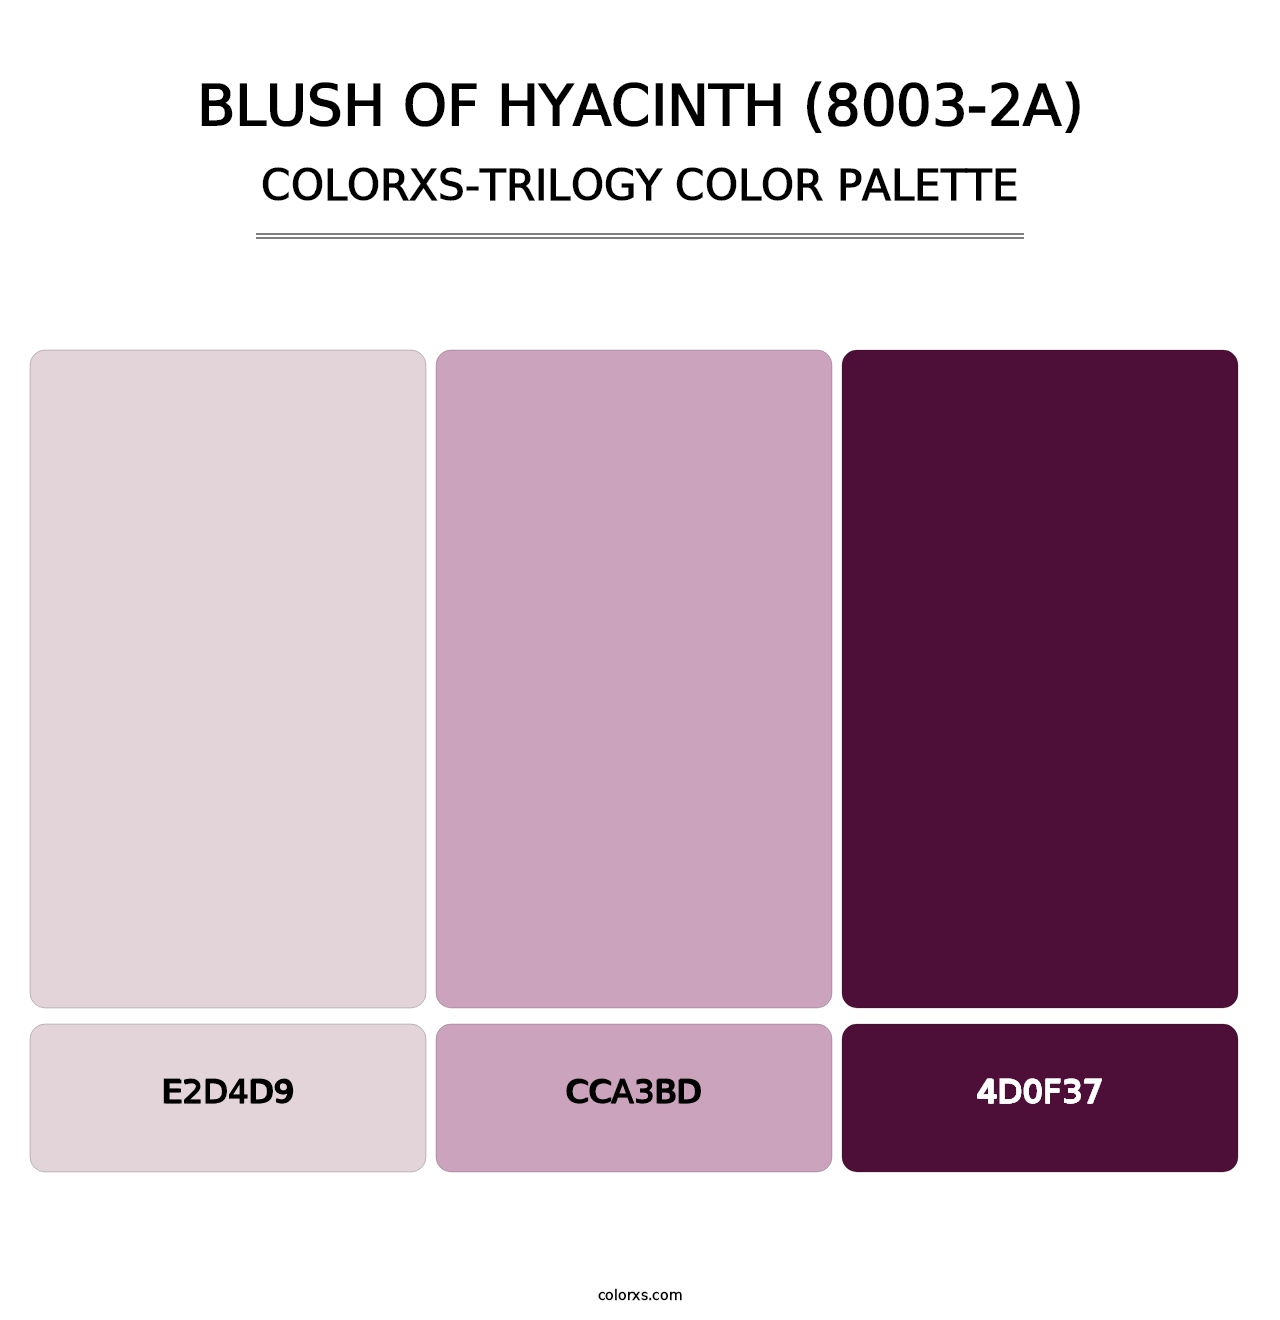 Blush of Hyacinth (8003-2A) - Colorxs Trilogy Palette